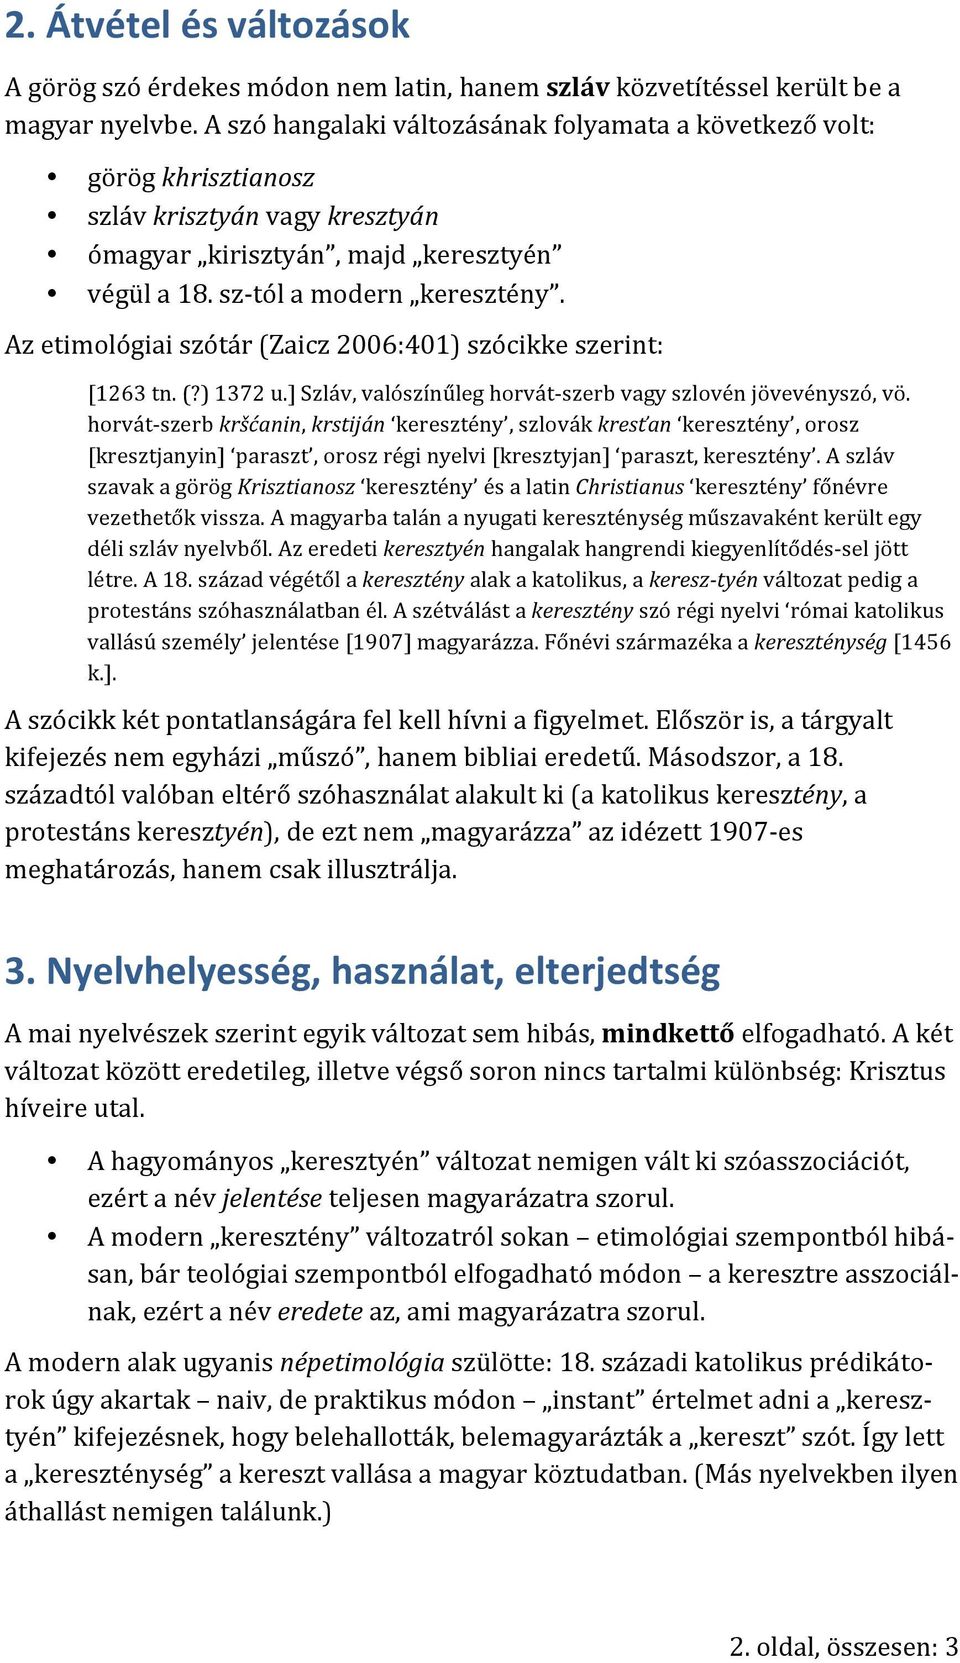 Az etimológiai szótár (Zaicz 2006:401) szócikke szerint: [1263 tn. (?) 1372 u.] Szláv, valószínűleg horvát- szerb vagy szlovén jövevényszó, vö.